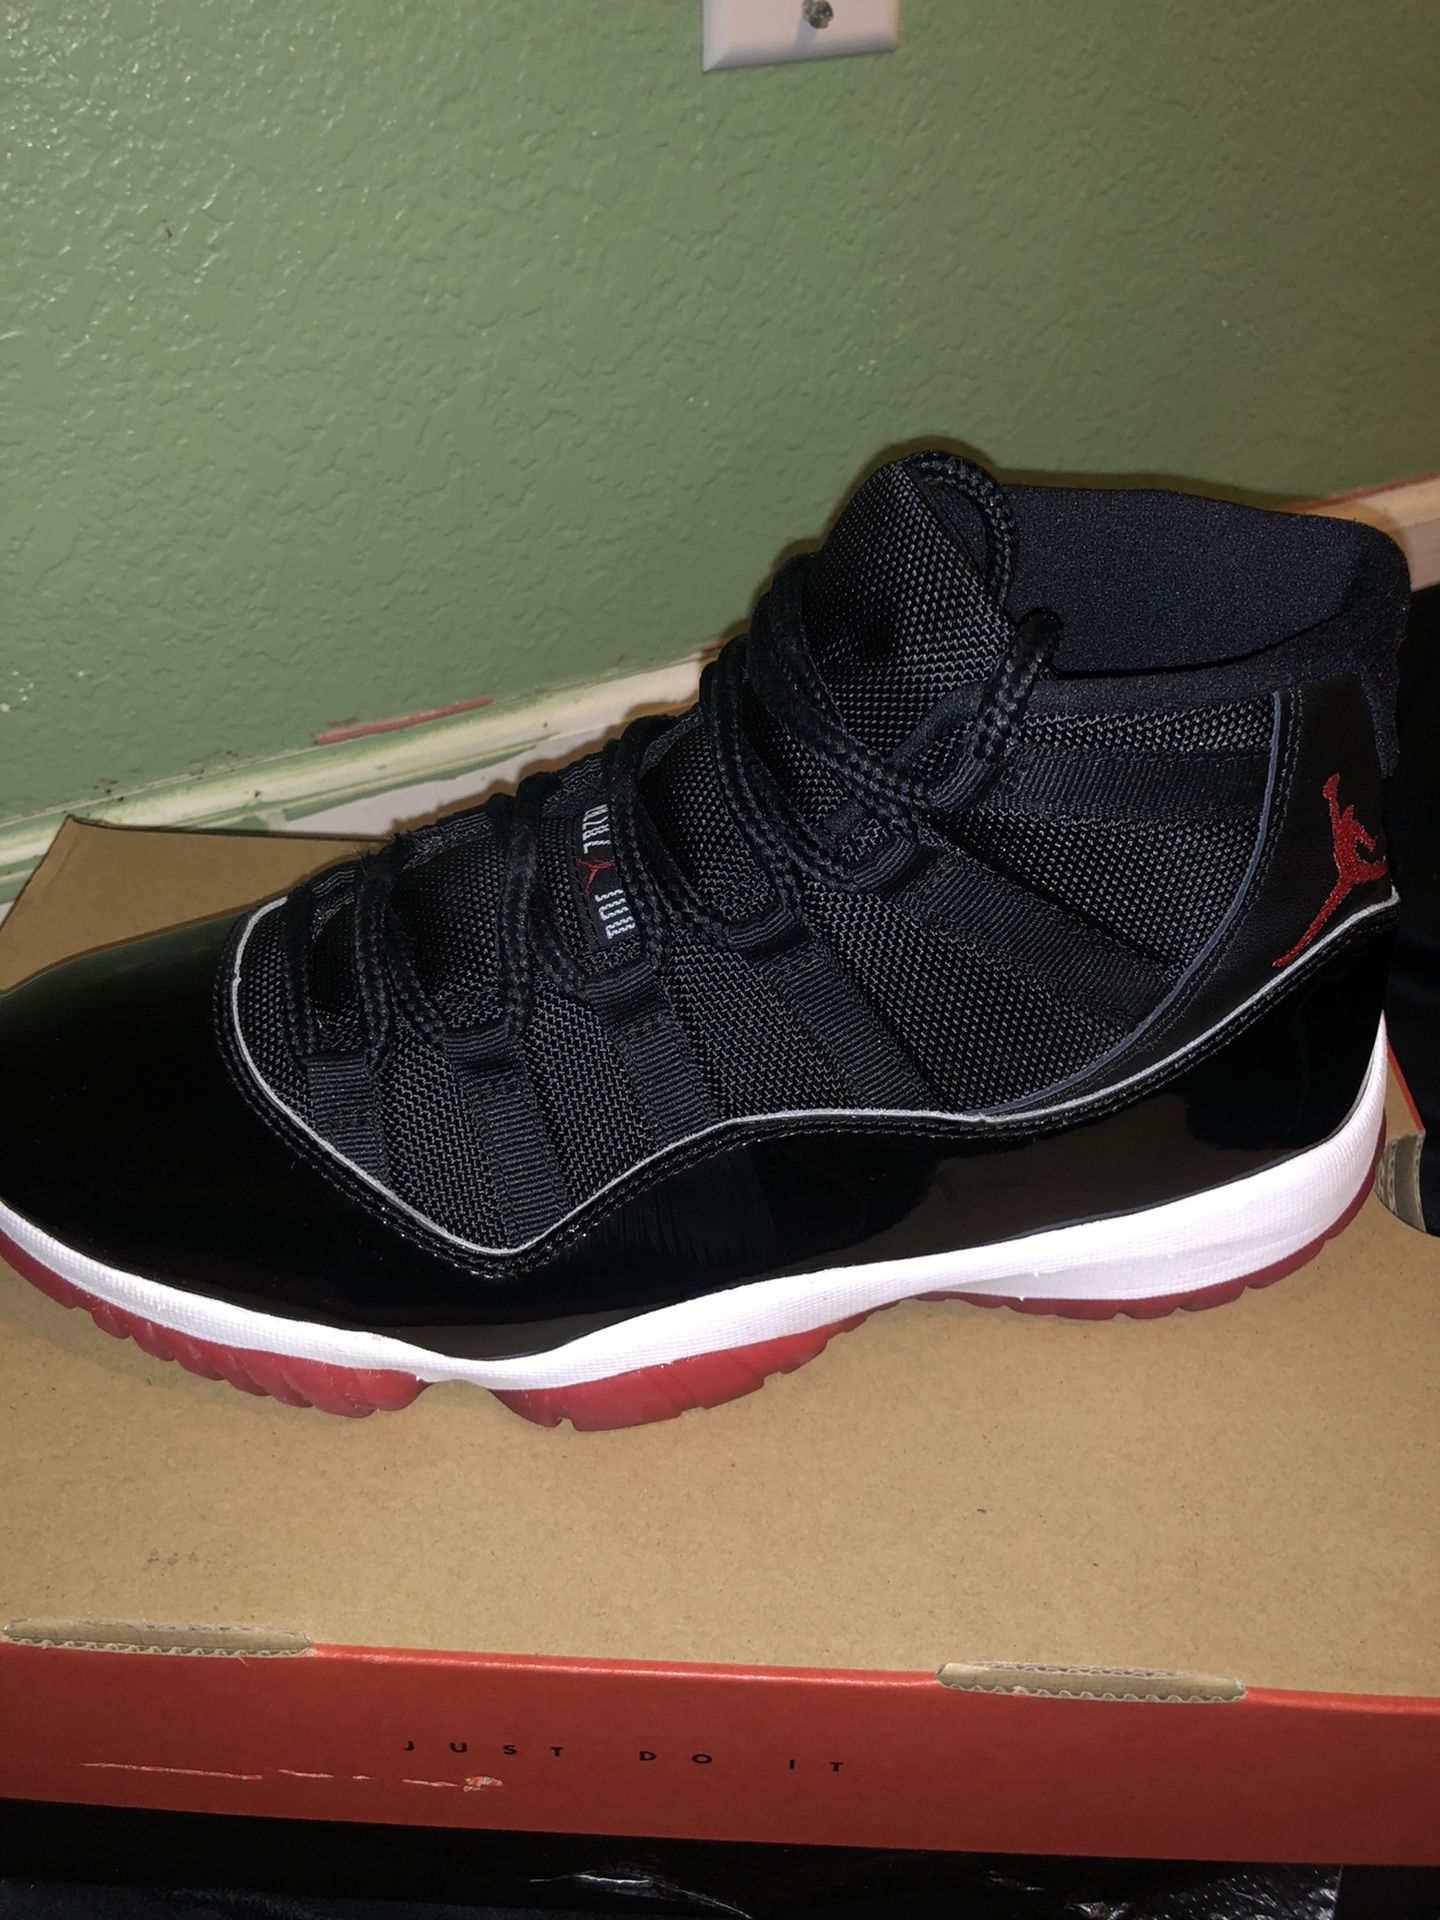 Size 9 Jordan bred 11s